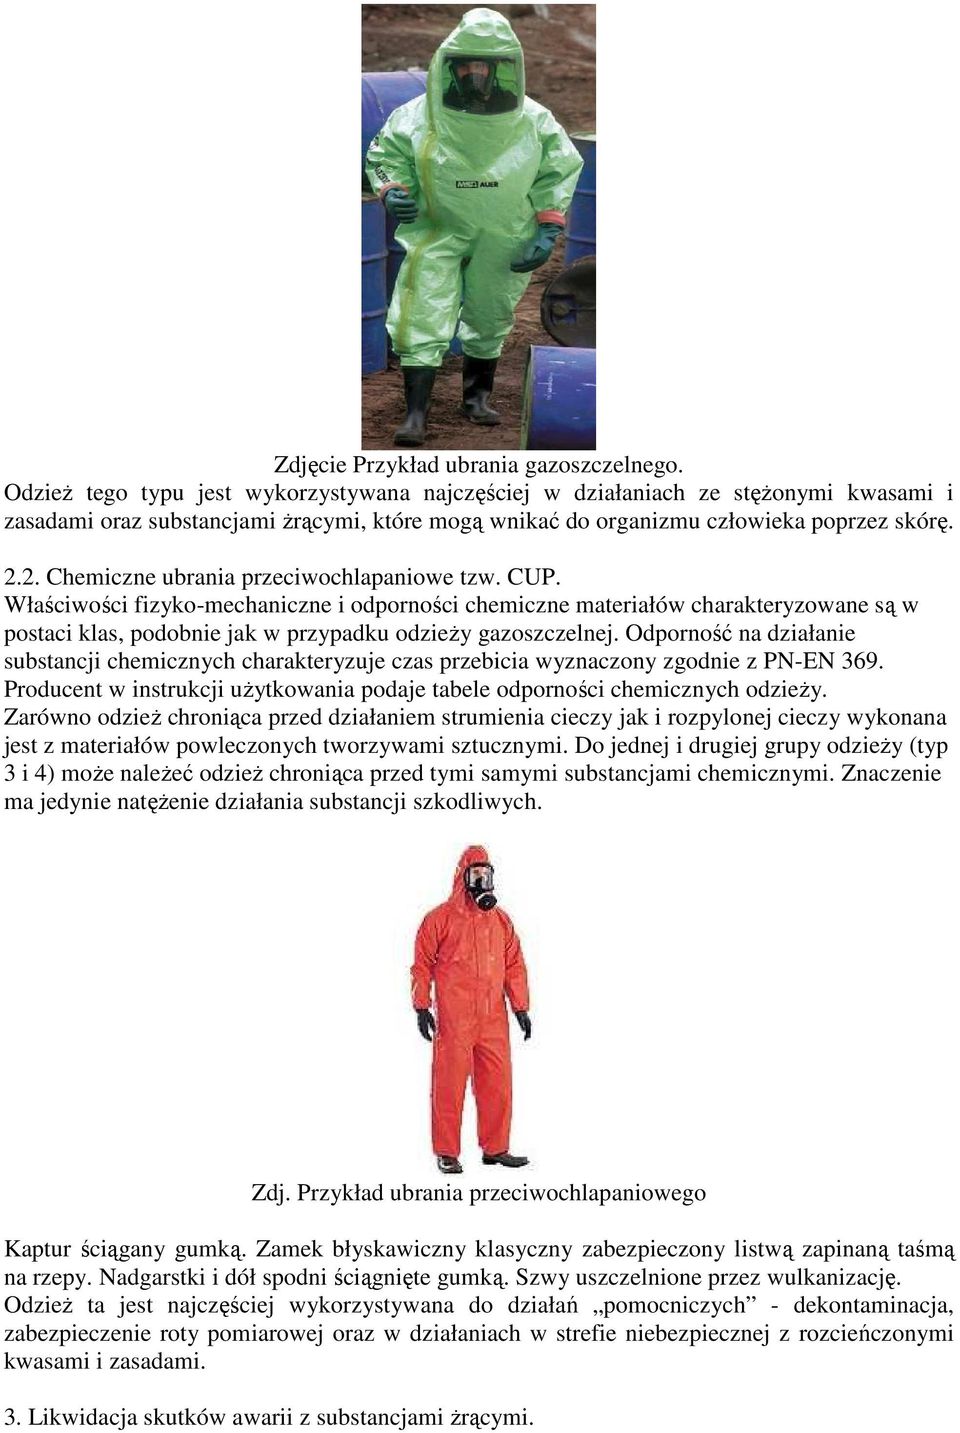 2. Chemiczne ubrania przeciwochlapaniowe tzw. CUP. Właściwości fizyko-mechaniczne i odporności chemiczne materiałów charakteryzowane są w postaci klas, podobnie jak w przypadku odzieŝy gazoszczelnej.